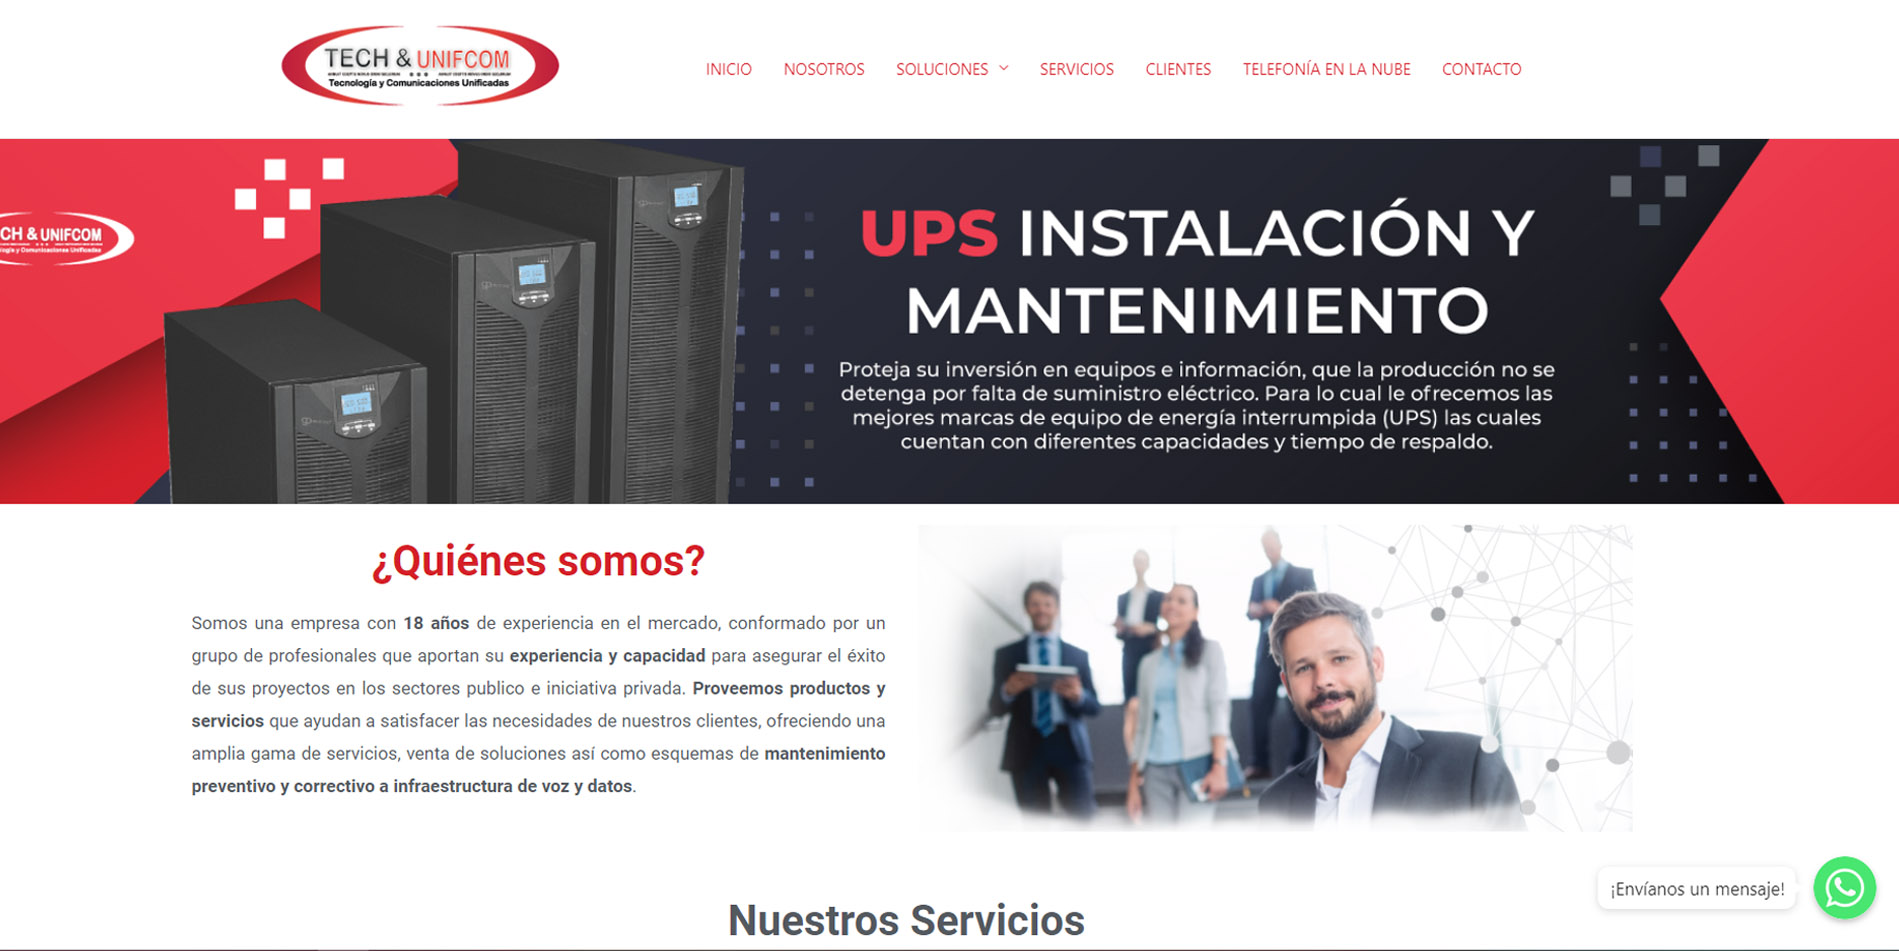 Sitios web en Ciudad de México 2019